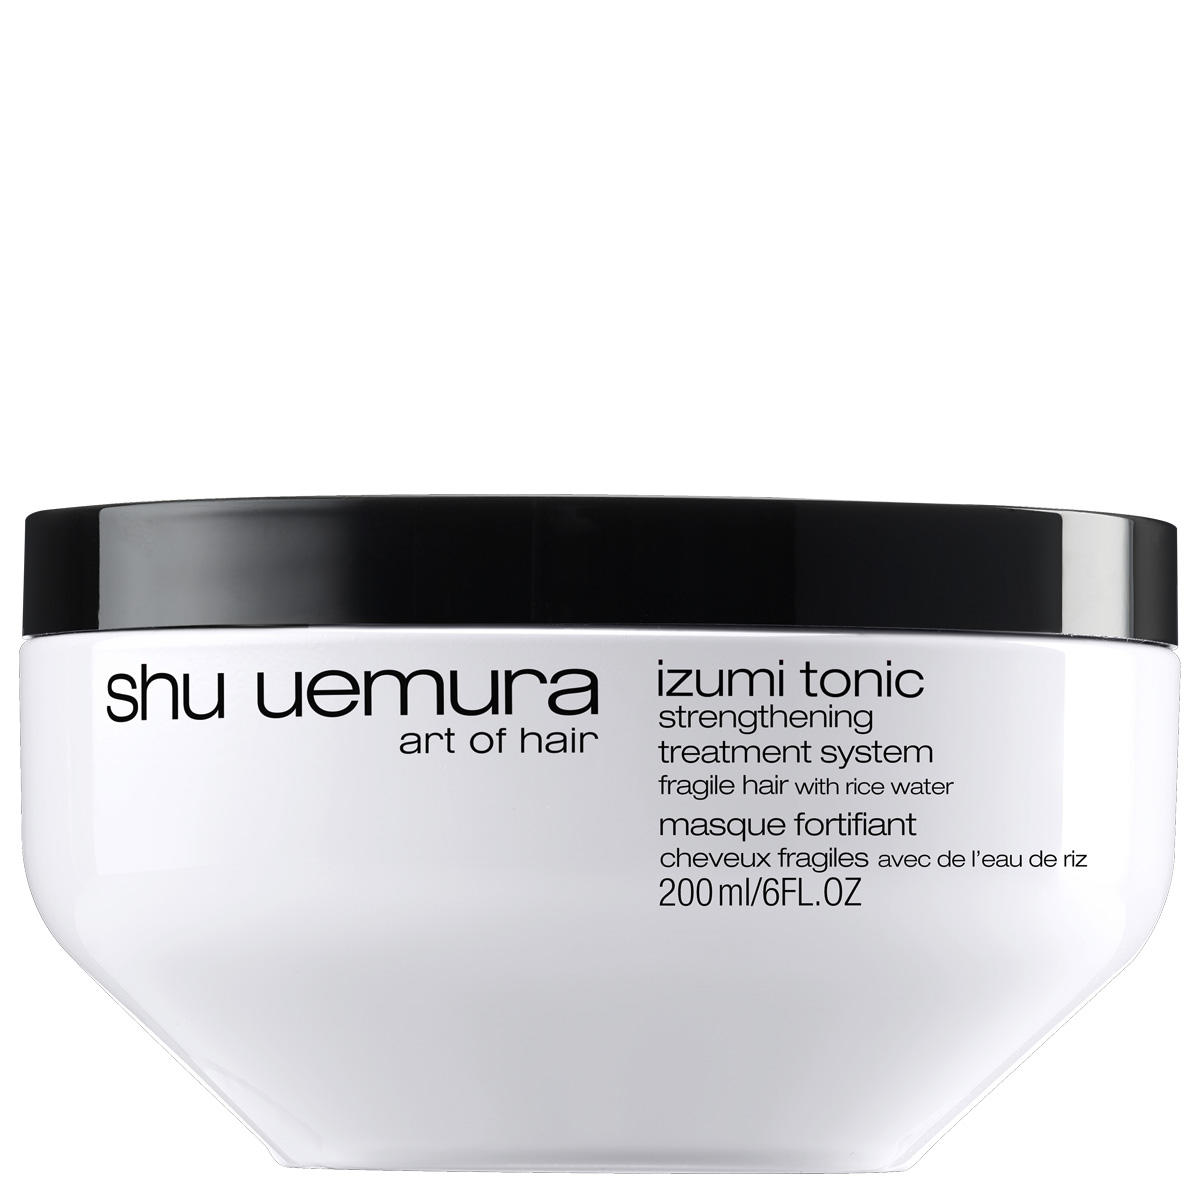 Shu Uemura Izumi Tonic Maschera di rinforzo 200 ml - 1